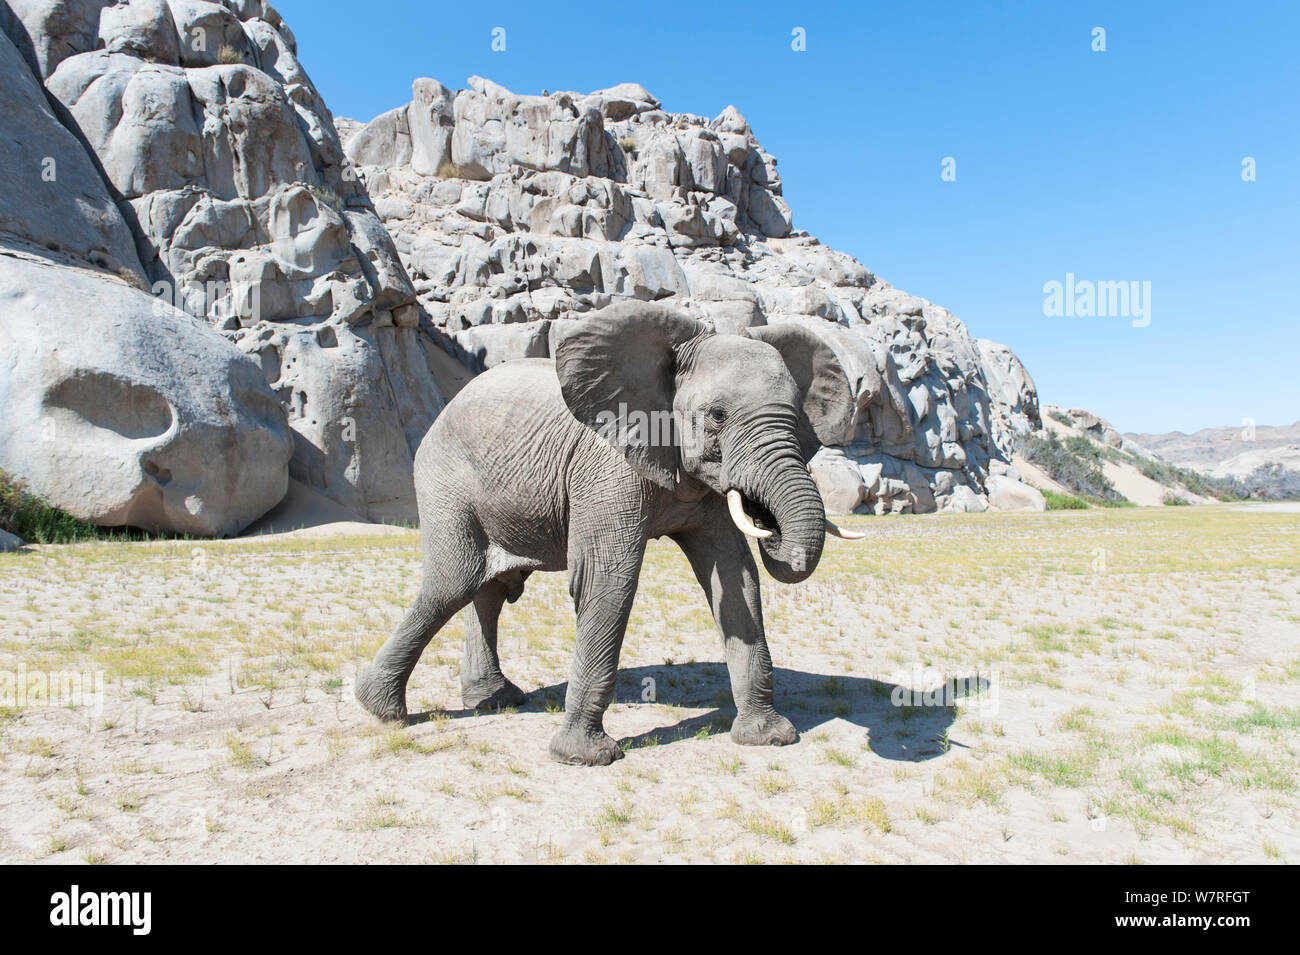 L'éléphant africain (Loxodonta africana), bébé, la Namibie désert Kaokoveld Banque D'Images